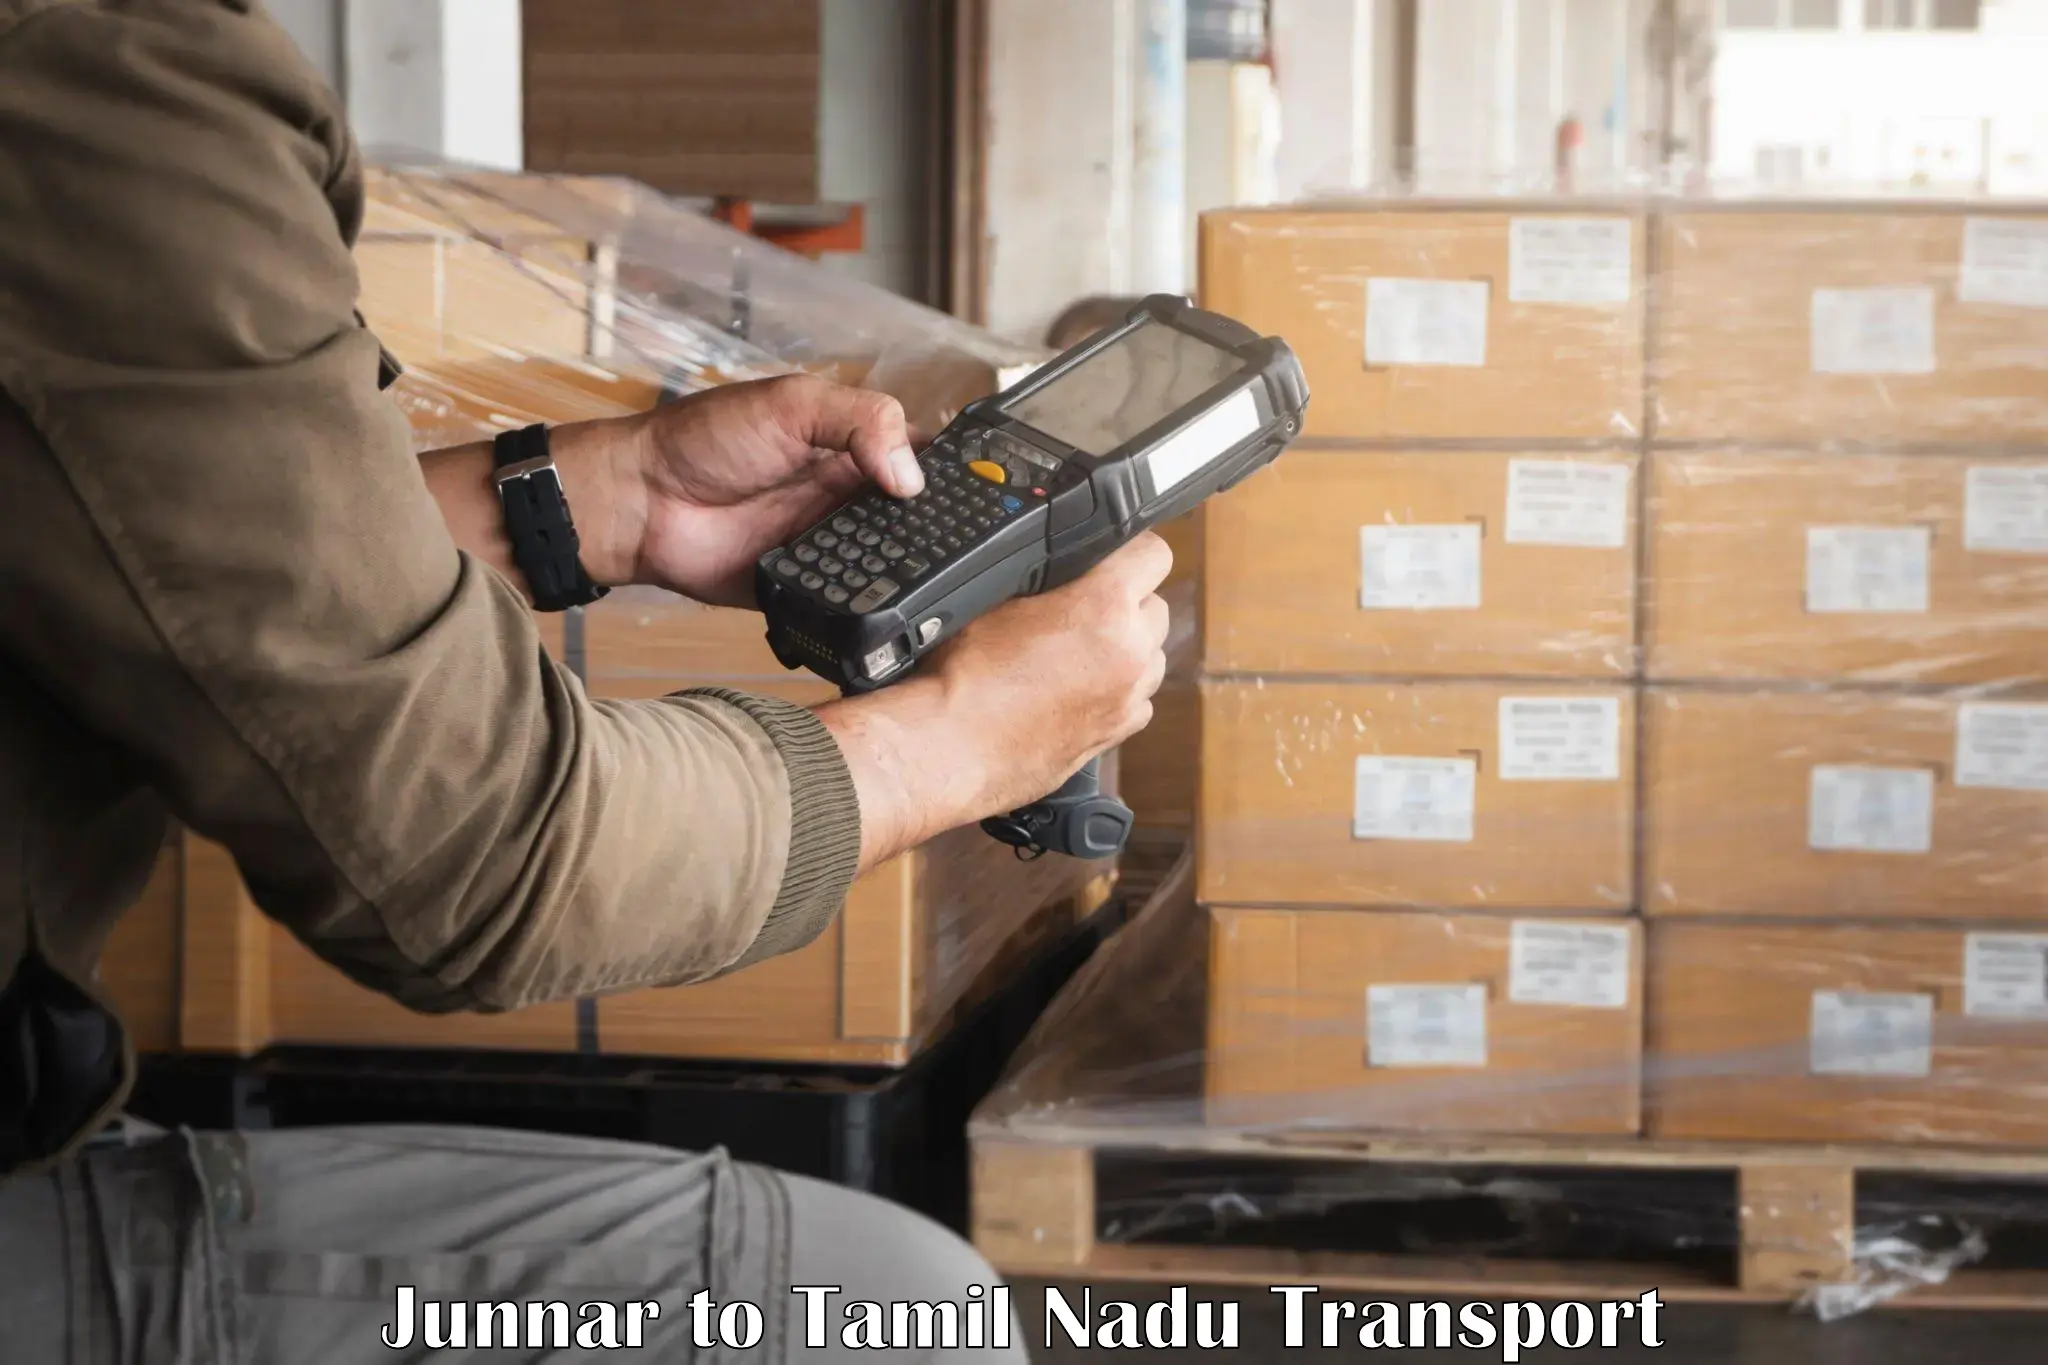 Transport services Junnar to Tamil Nadu